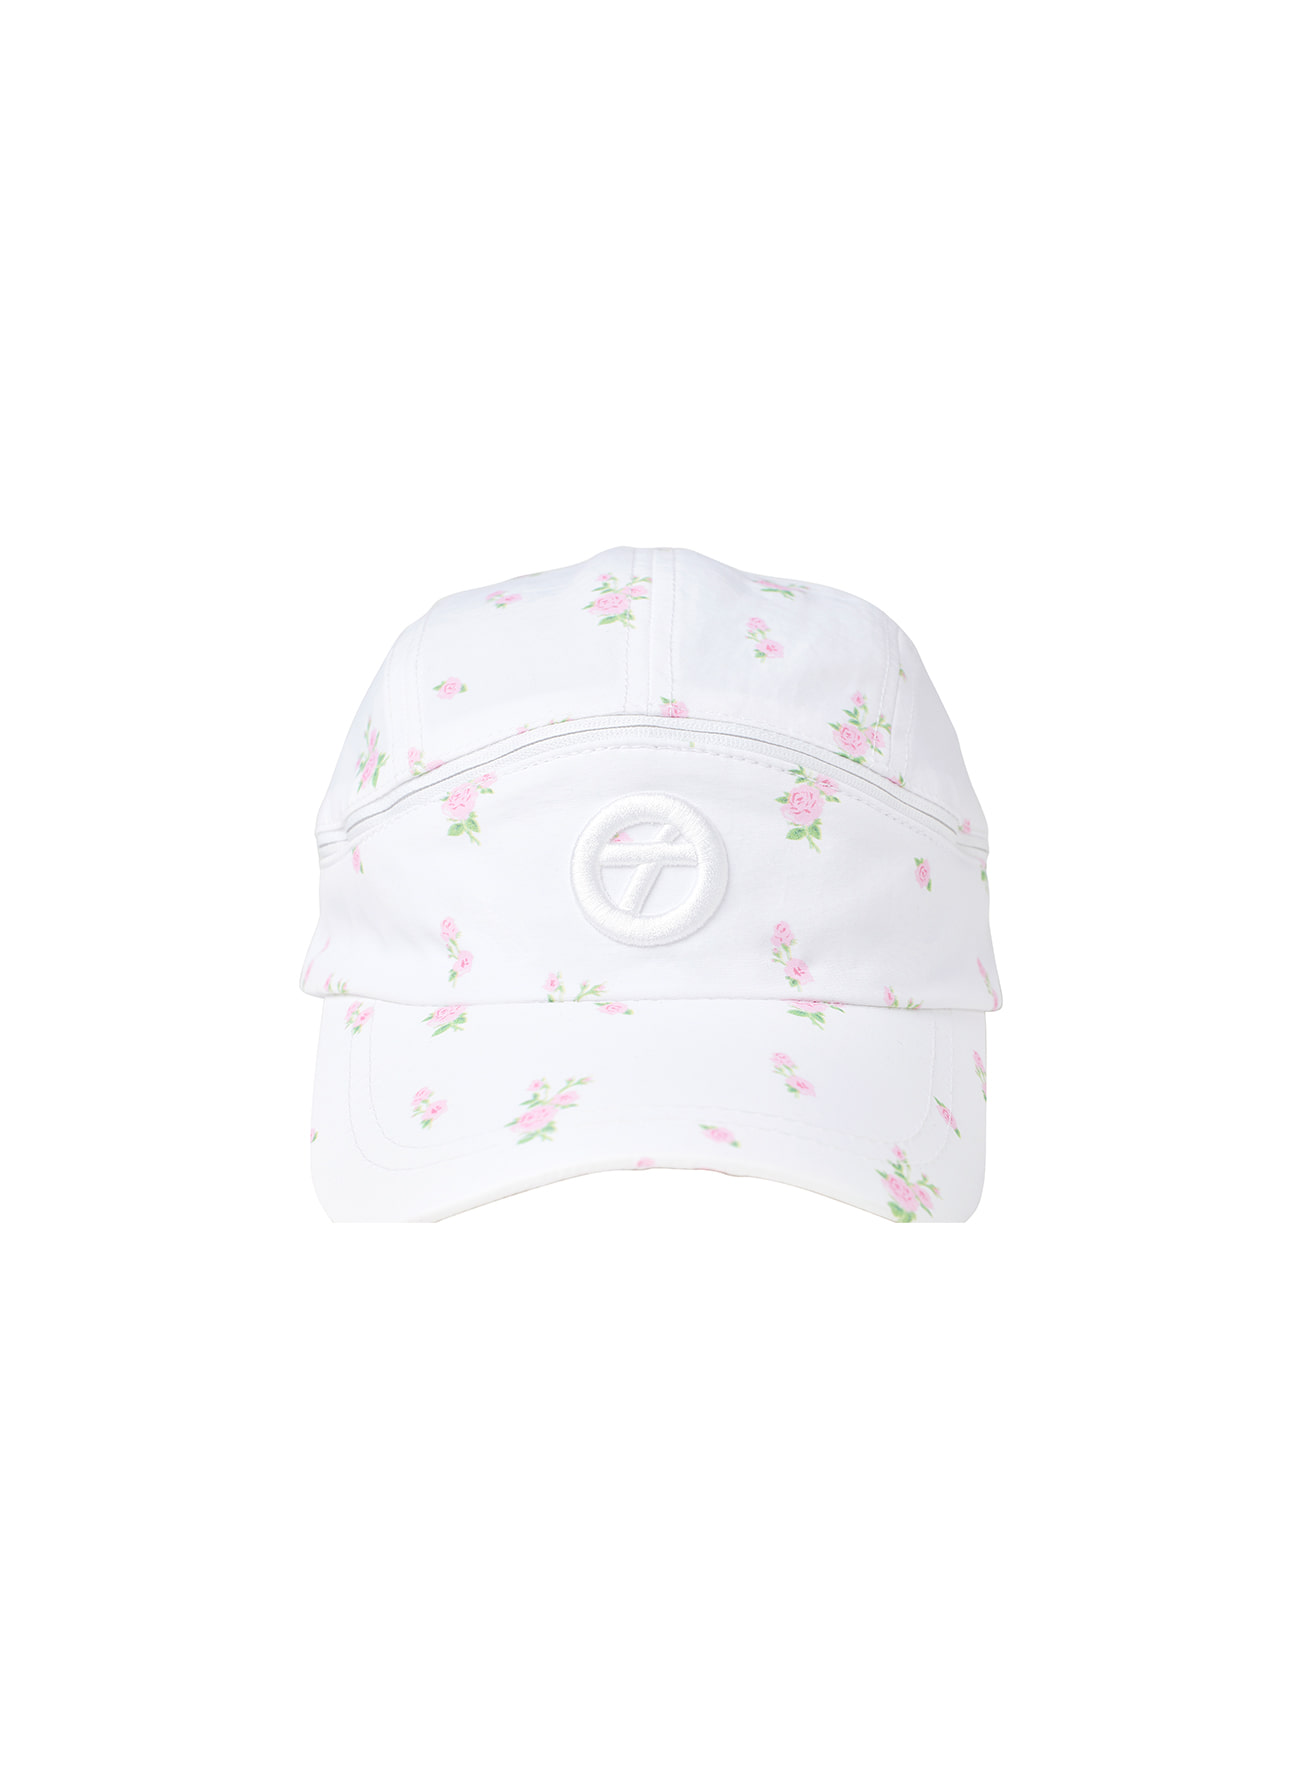 FLOWER VISOR BALL CAP, WHITE